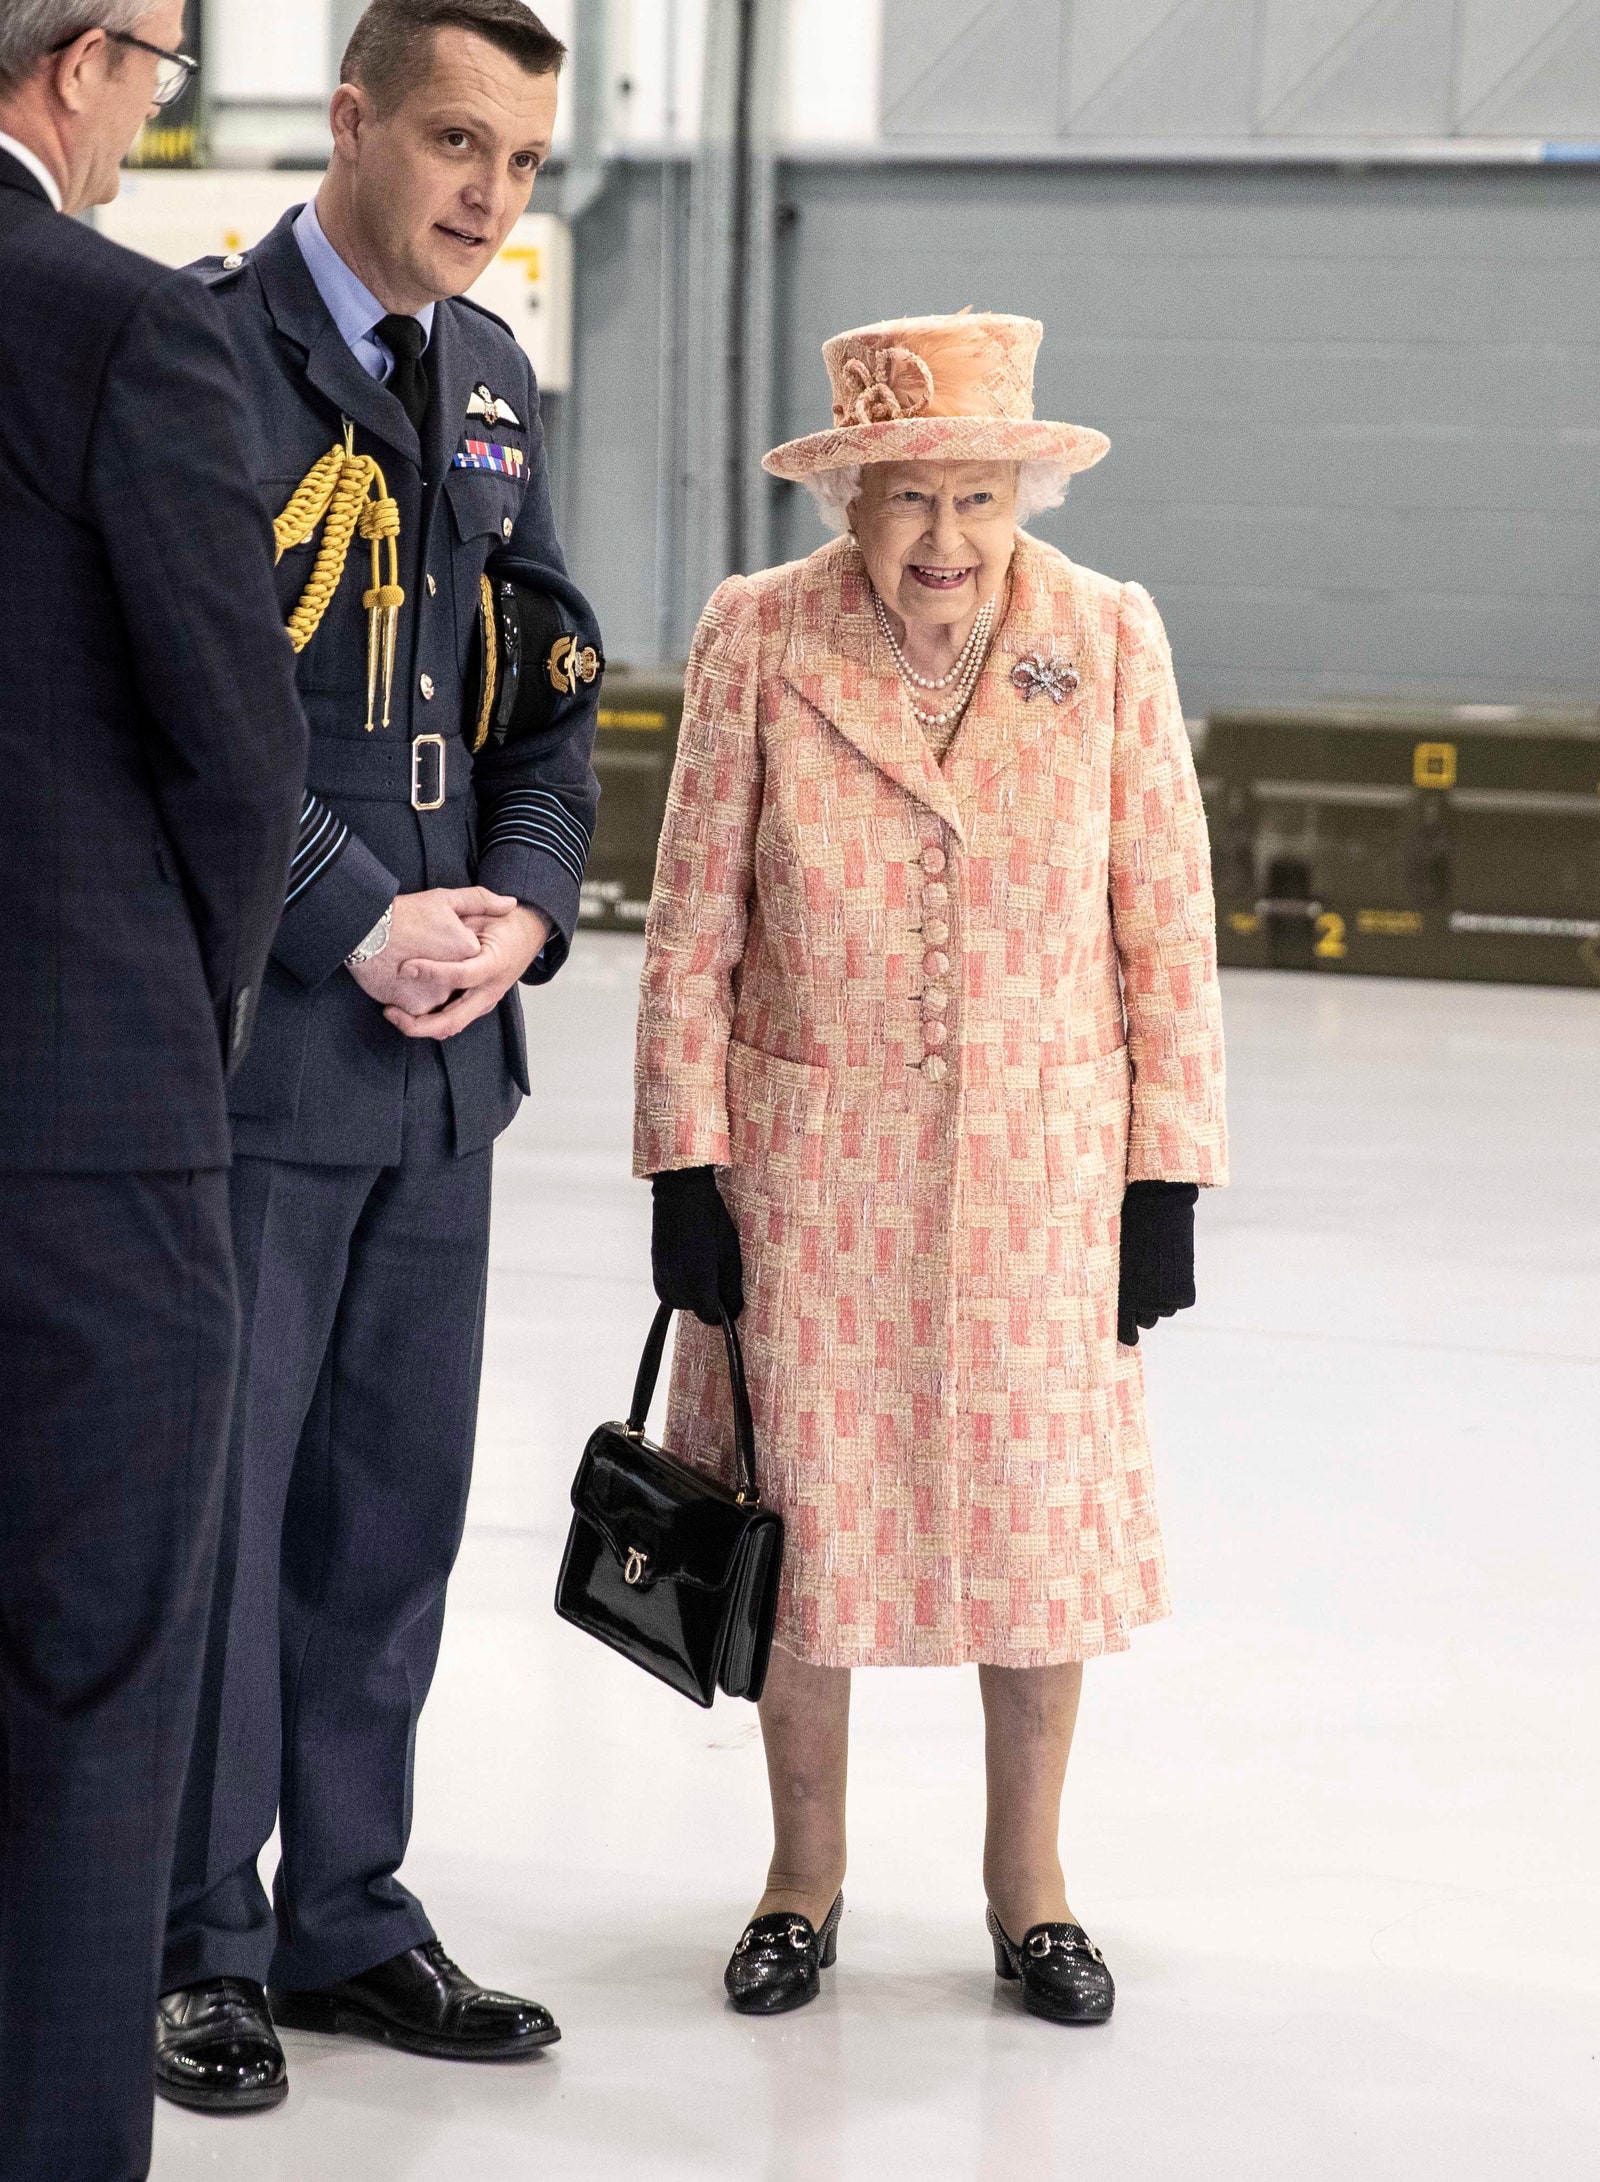 Nữ hoàng đã chọn một bộ quần áo dài màu hồng đào nhạt với chiếc túi xách Launer đặc trưng của mình khi đến thăm một căn cứ Không quân Hoàng gia ở King's Lynn.